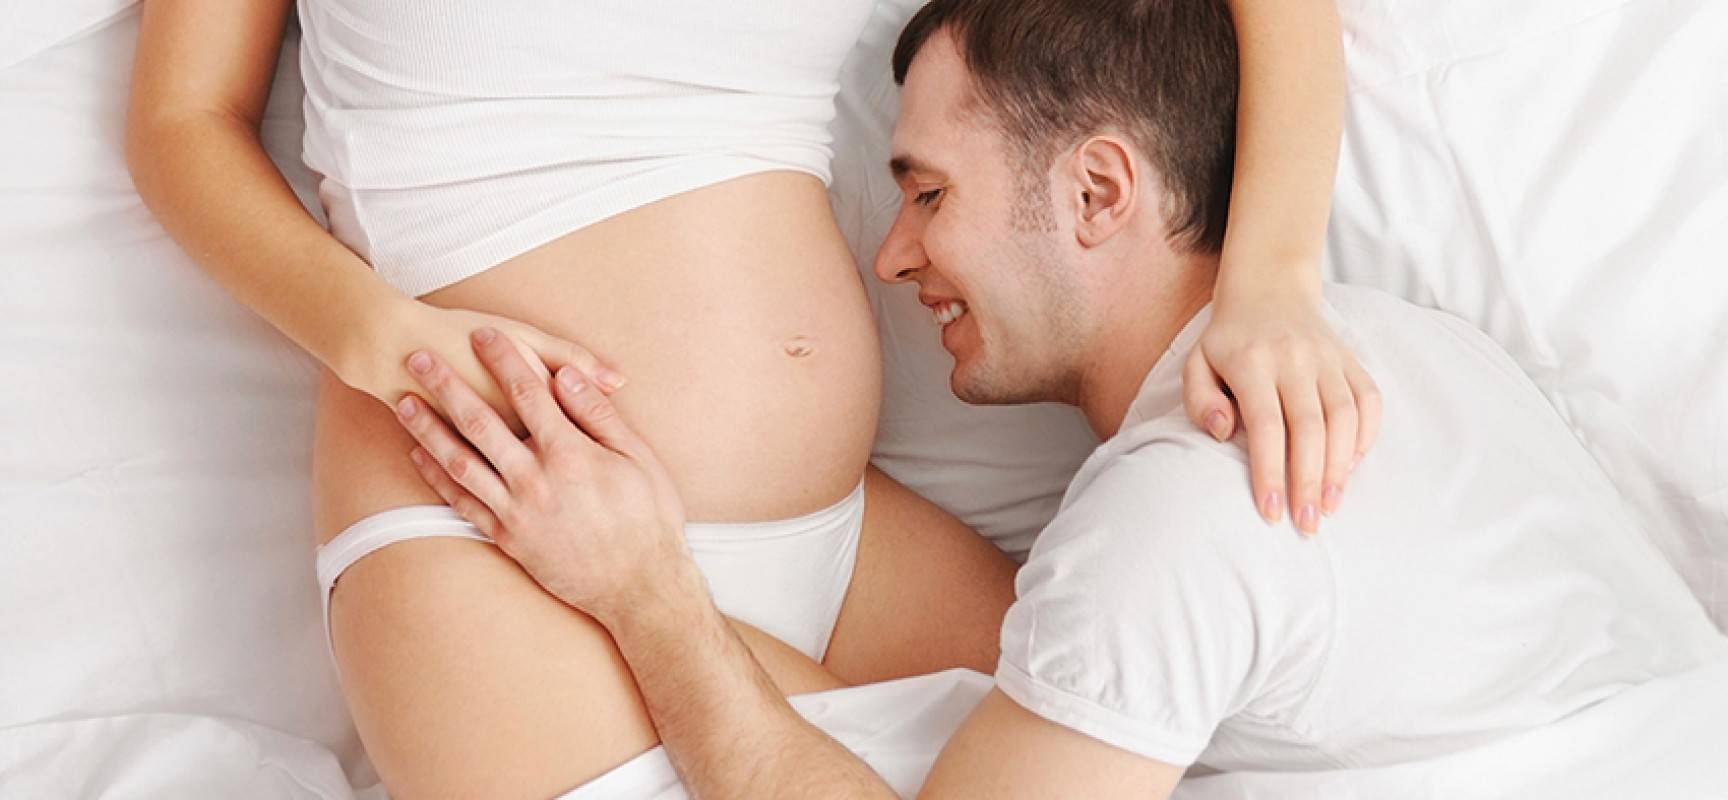 Как нельзя сидеть беременным: какие позы запрещены и разрешены во время беременности?